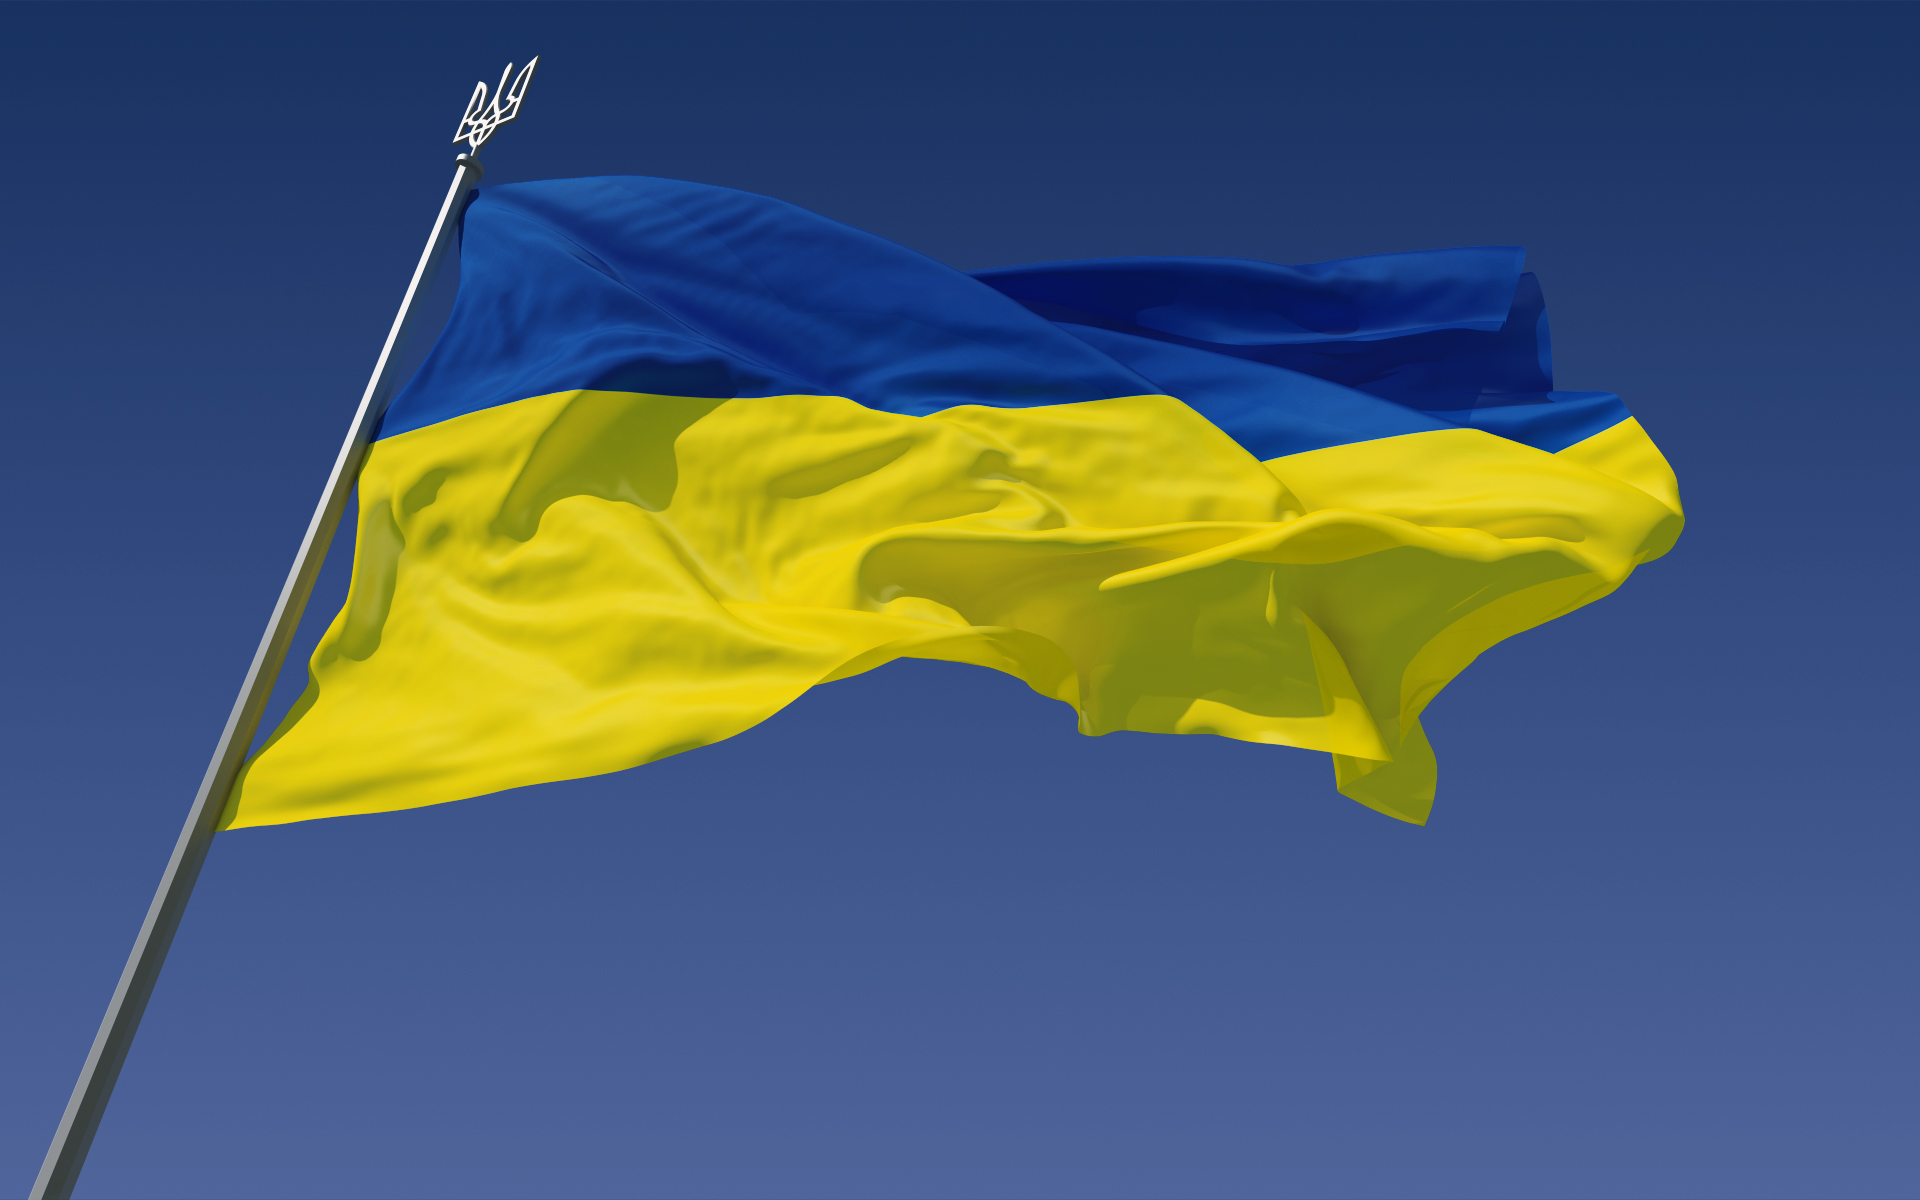 Nexa3Dのアヴィ・レイチェンタルCEOがロシアのウクライナ侵略を批判するコメントを投稿